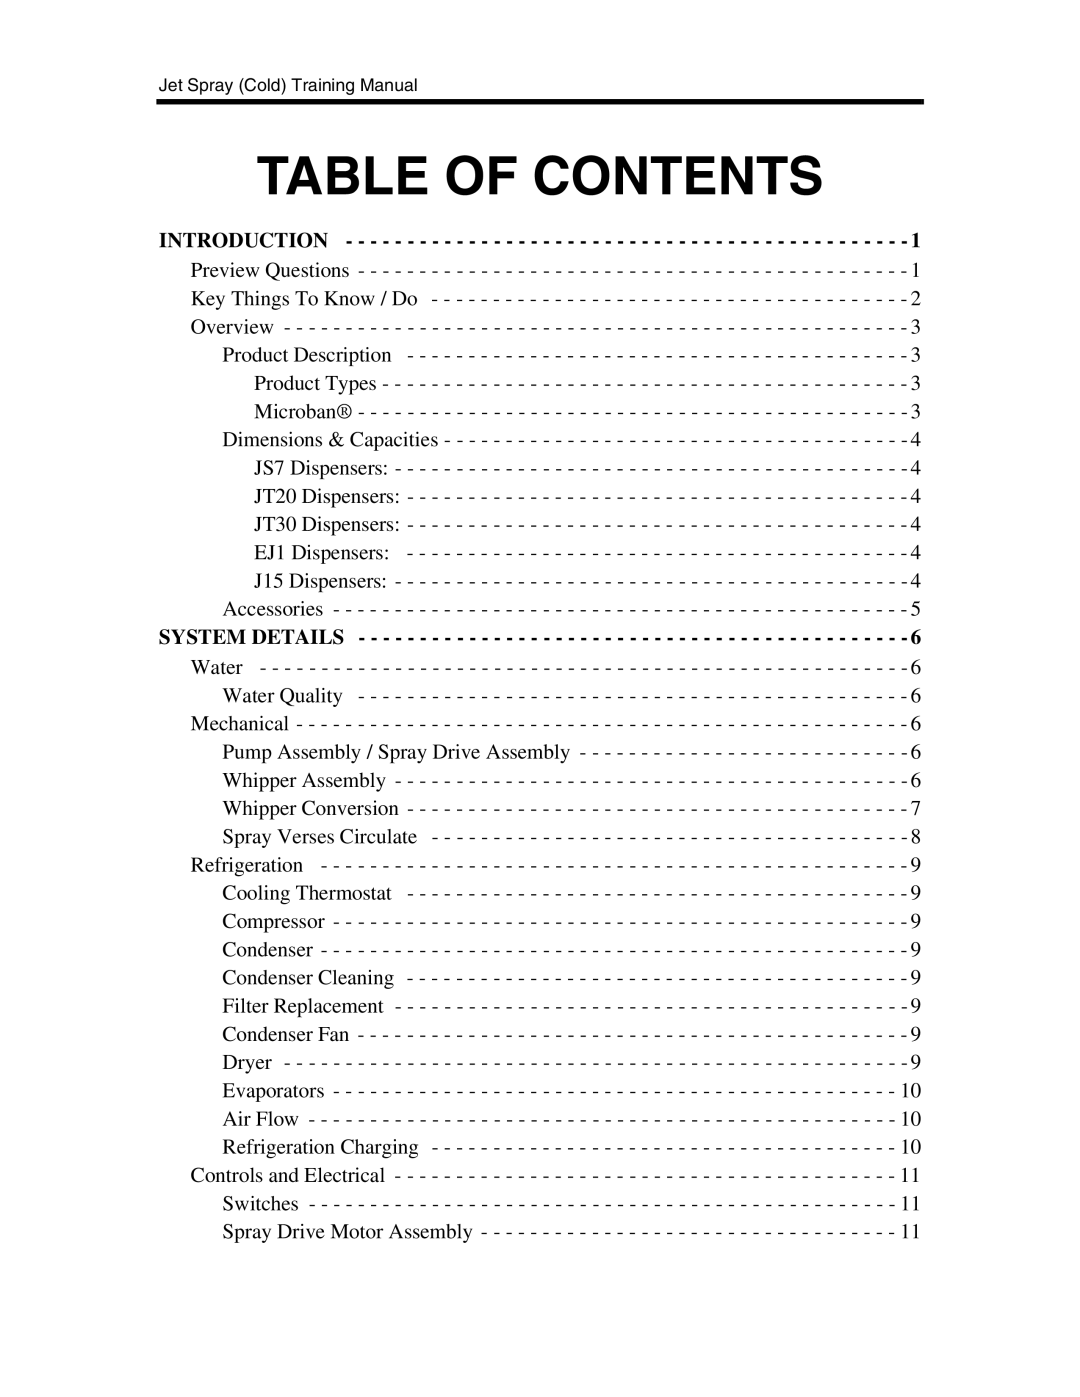 Cornelius EJ1, JT20, JS7, J15, JT30 manual Table of Contents 